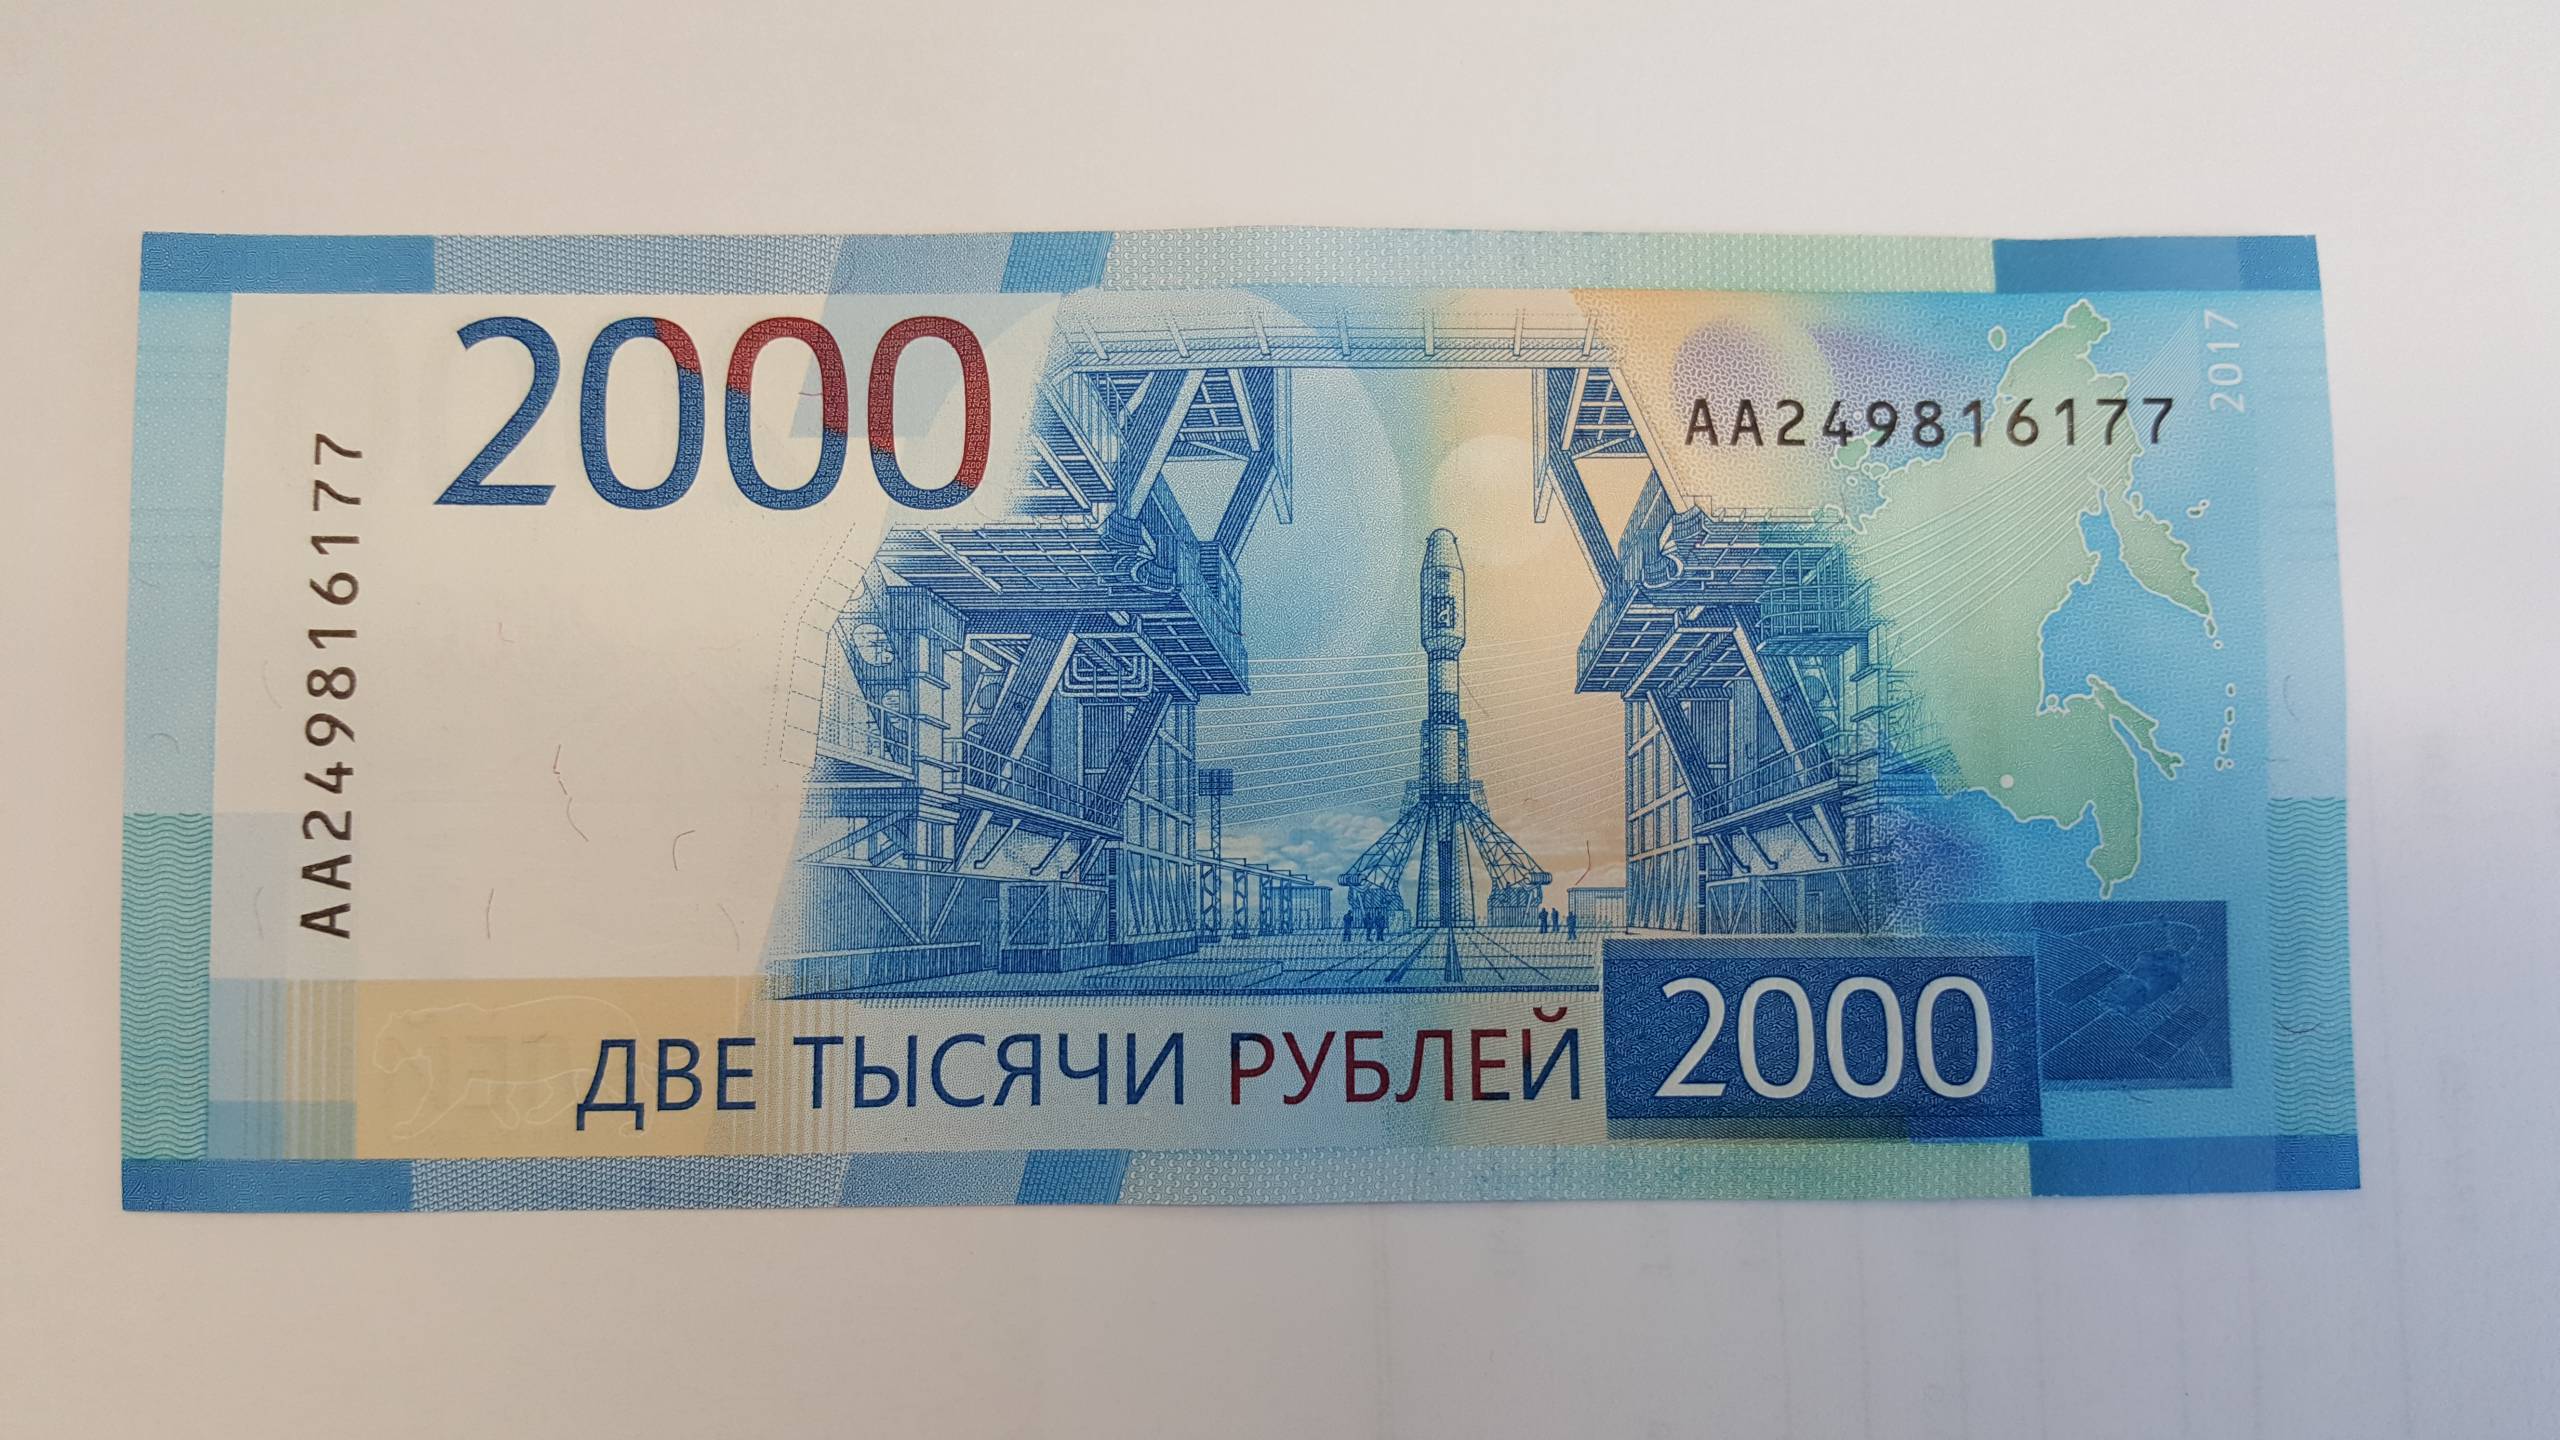 2000 рублей какого года. Купюра 2000. 2000 Рублей. 2000 Рублей банкнота. Две тысячи рублей купюра.